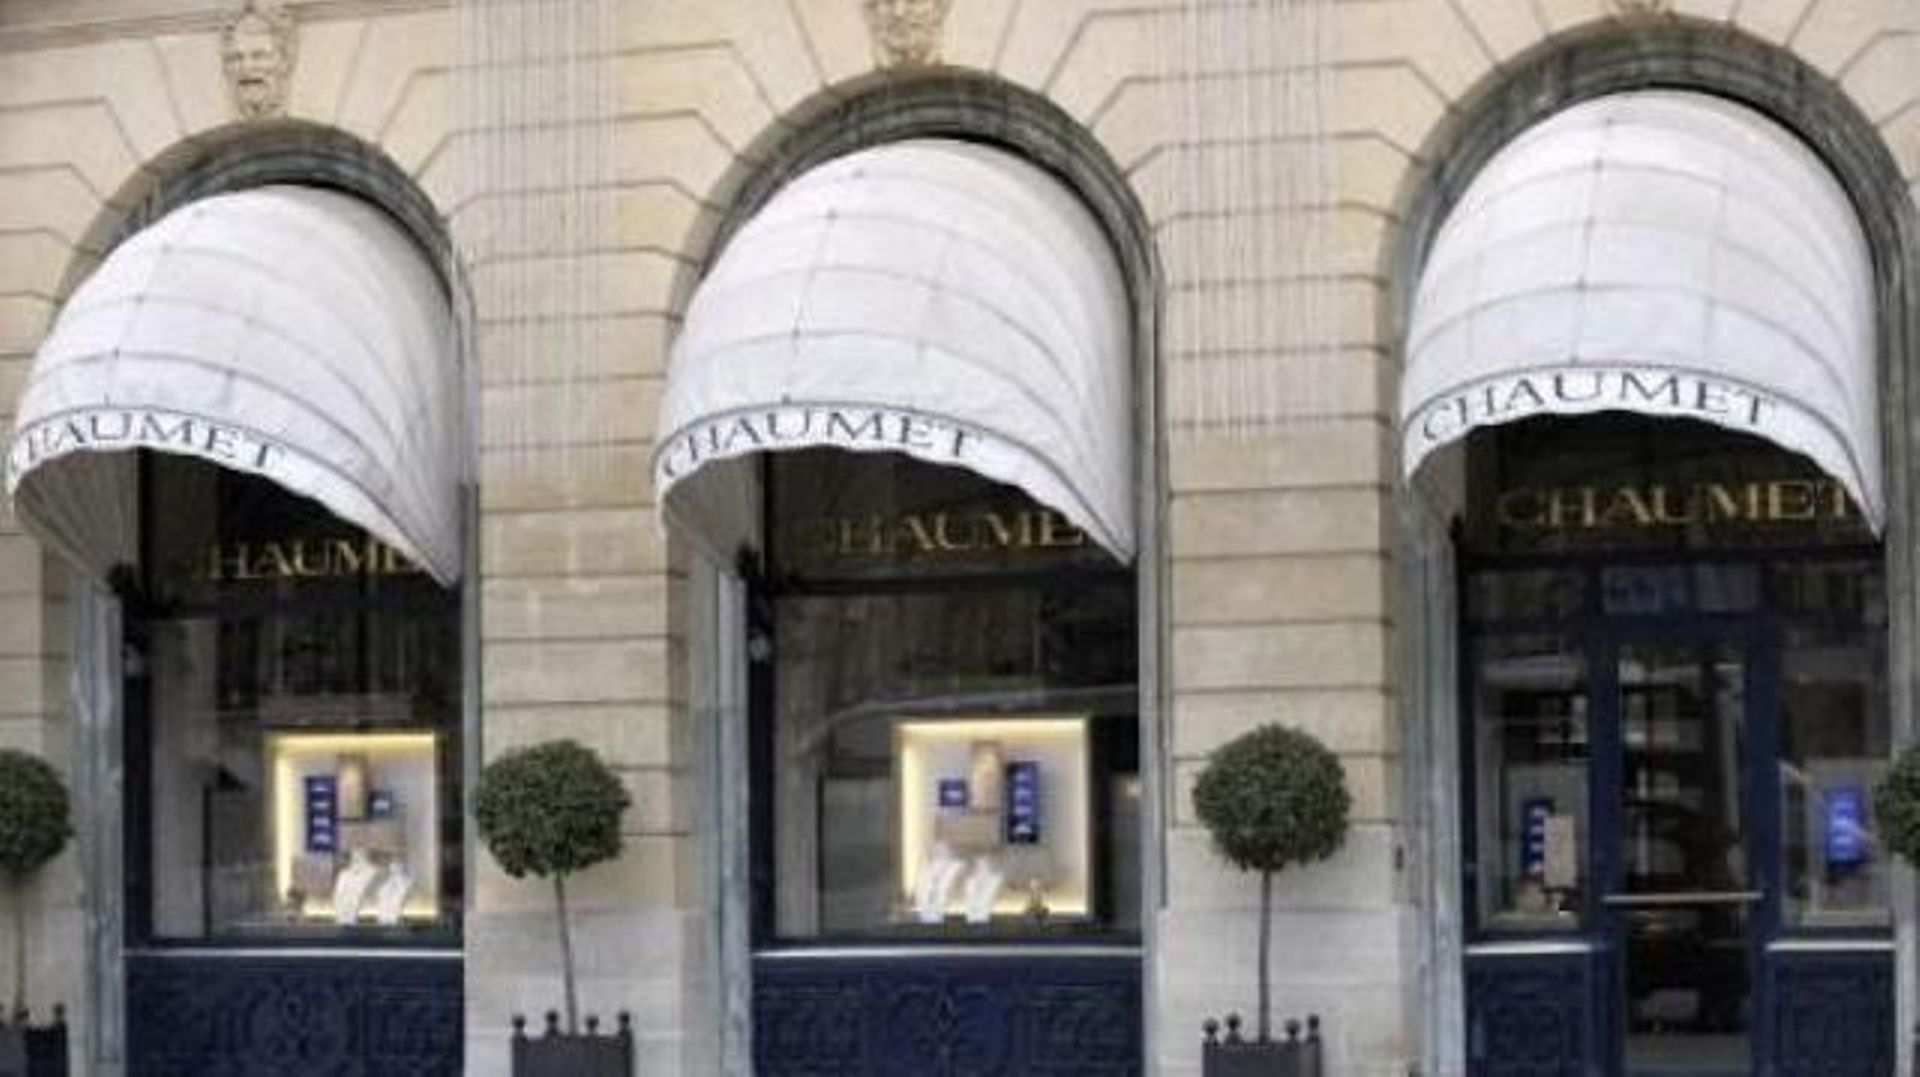 Braquage d’une bijouterie Chaumet à Paris, 2 à 3 millions d’euros de butin